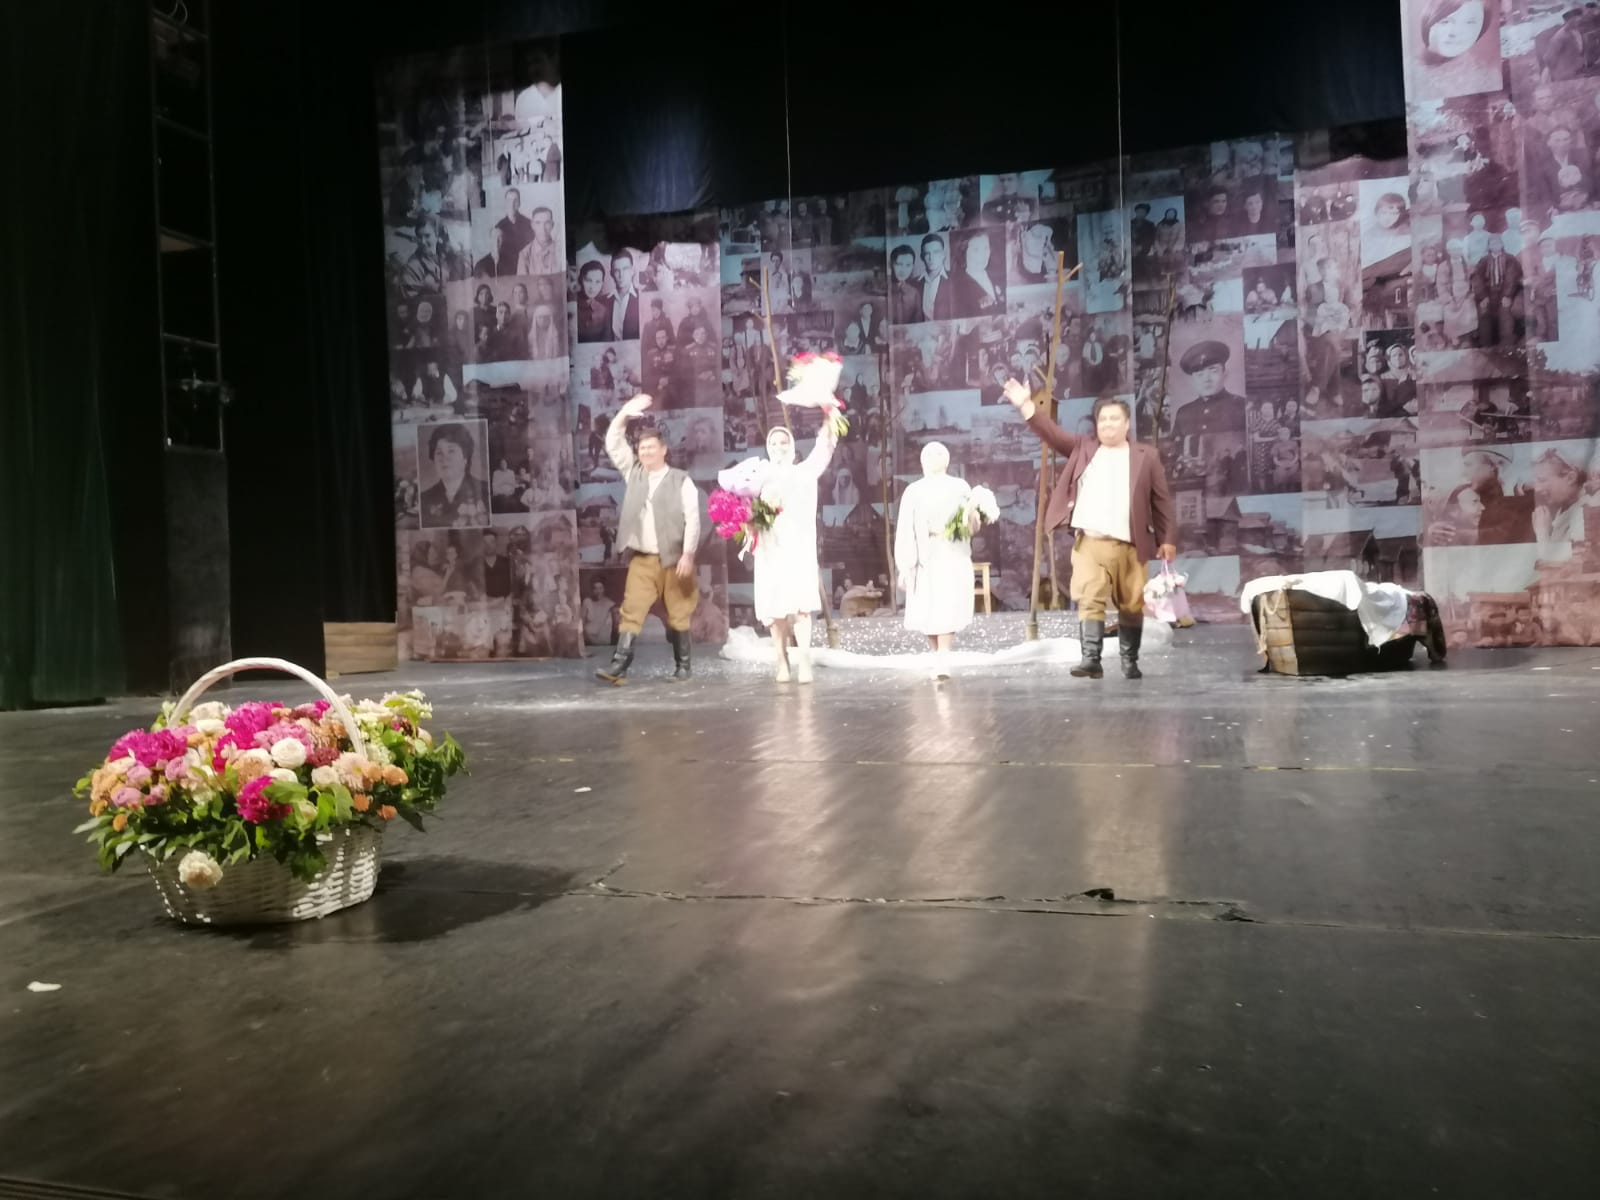 Марат Әхмәтов Тинчурин театрында «Нәзер» спектаклен карады